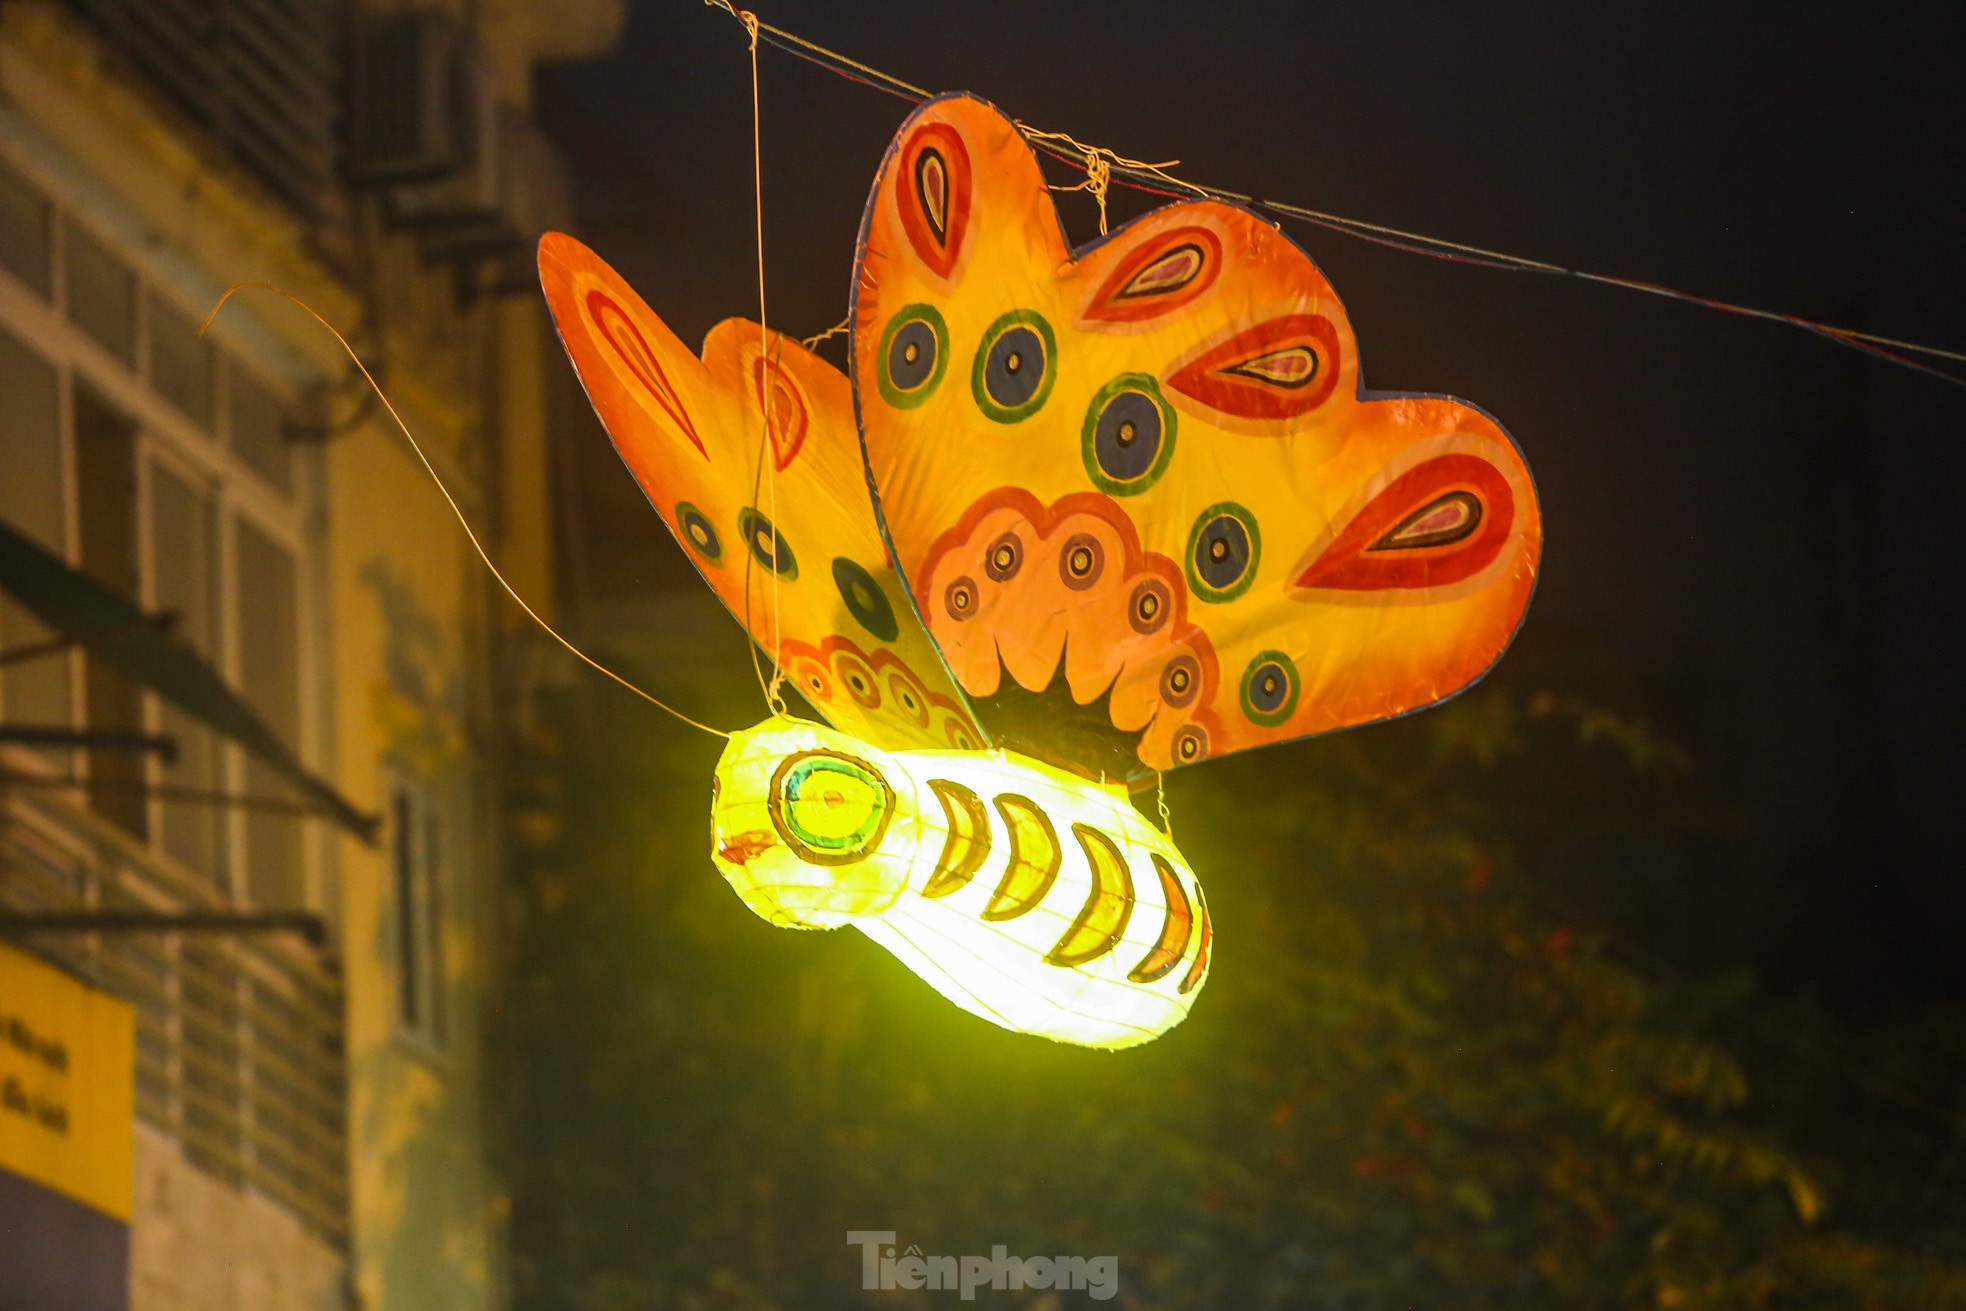 Độc lạ đèn trung thu truyền thống 'lơ lửng' trên những con phố cổ Hà Nội - Ảnh 8.